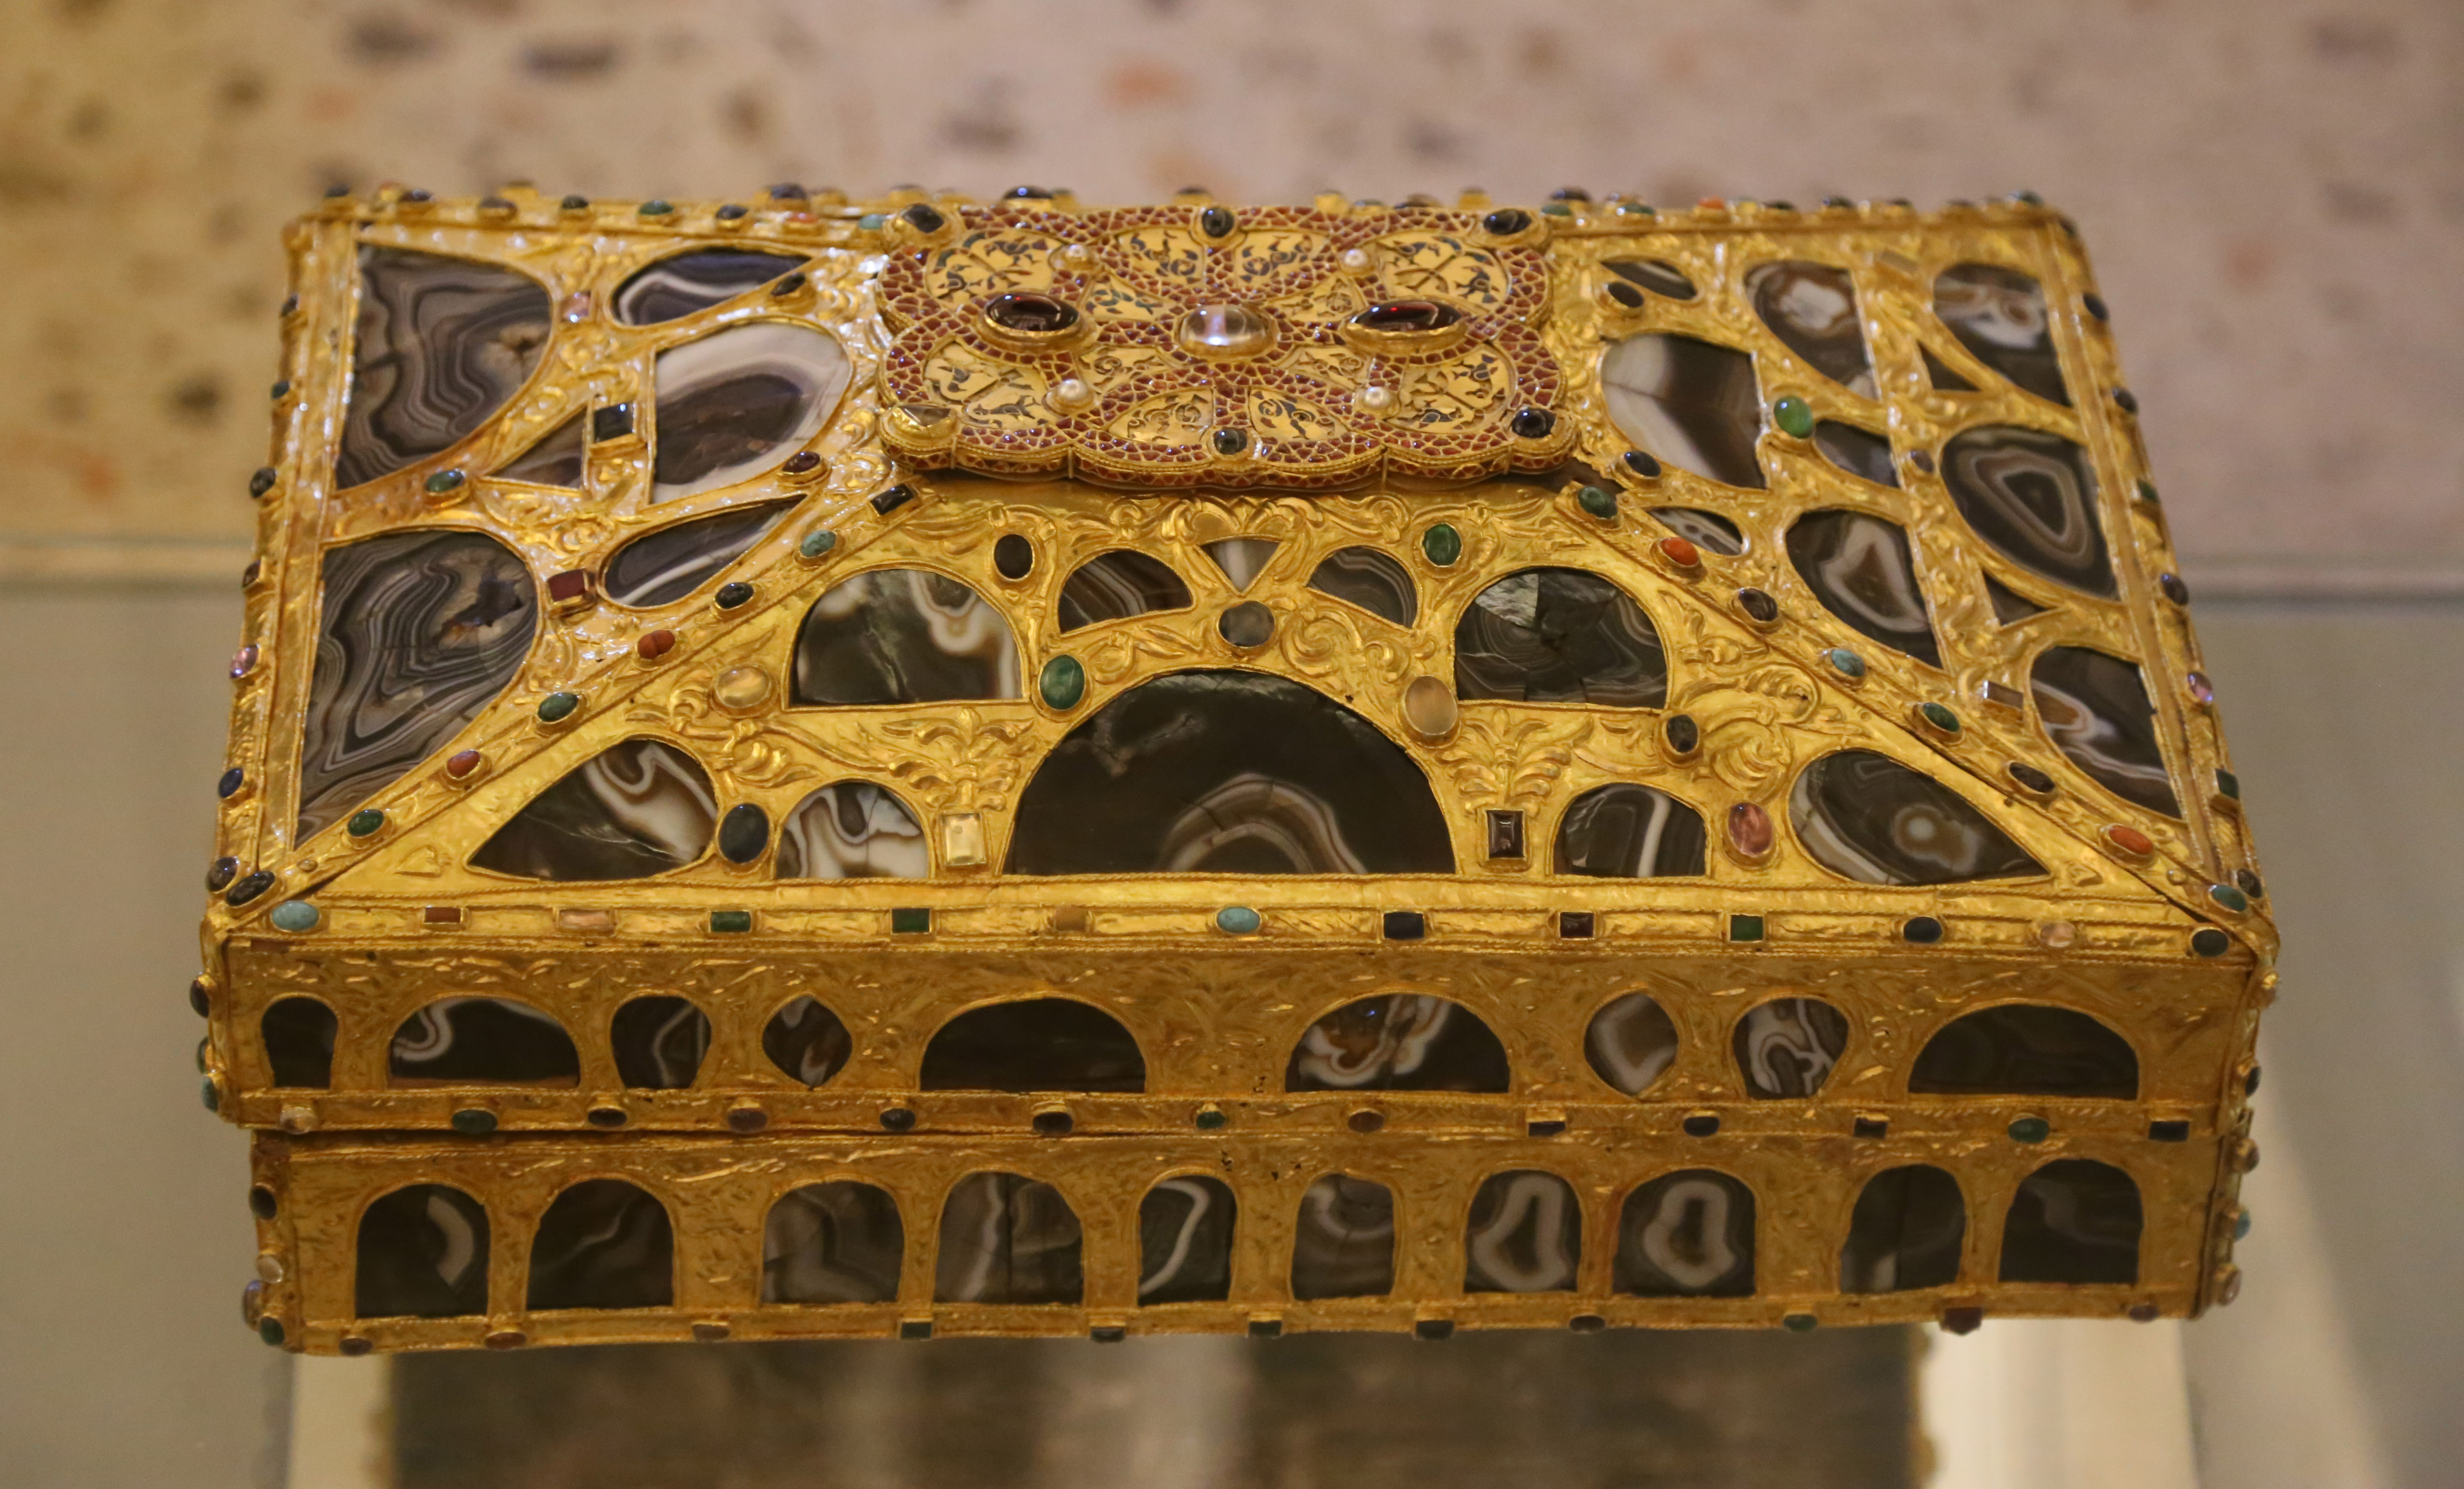 Caja de las ágatas: foto de la caja de las ágatas: arqueta de madera de forma rectangular, recubierta de con láminas de oro, y adornada con temas florales. Destinada a guardar las reliquias que se encuentran en la Cámara Santa de la catedral de Oviedo.
